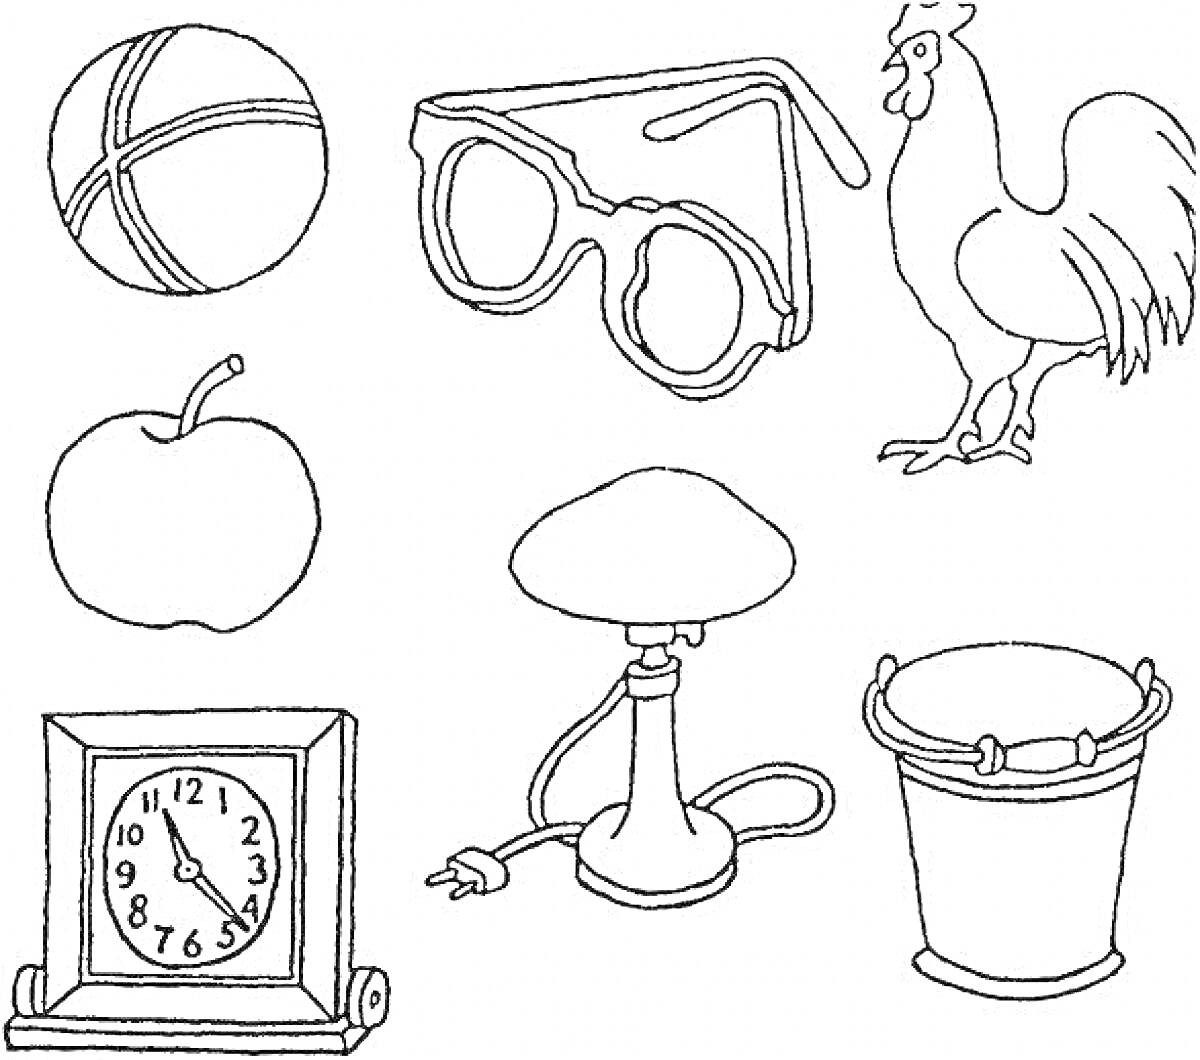 Мяч, очки, петух, яблоко, настольные часы, настольная лампа, ведро.